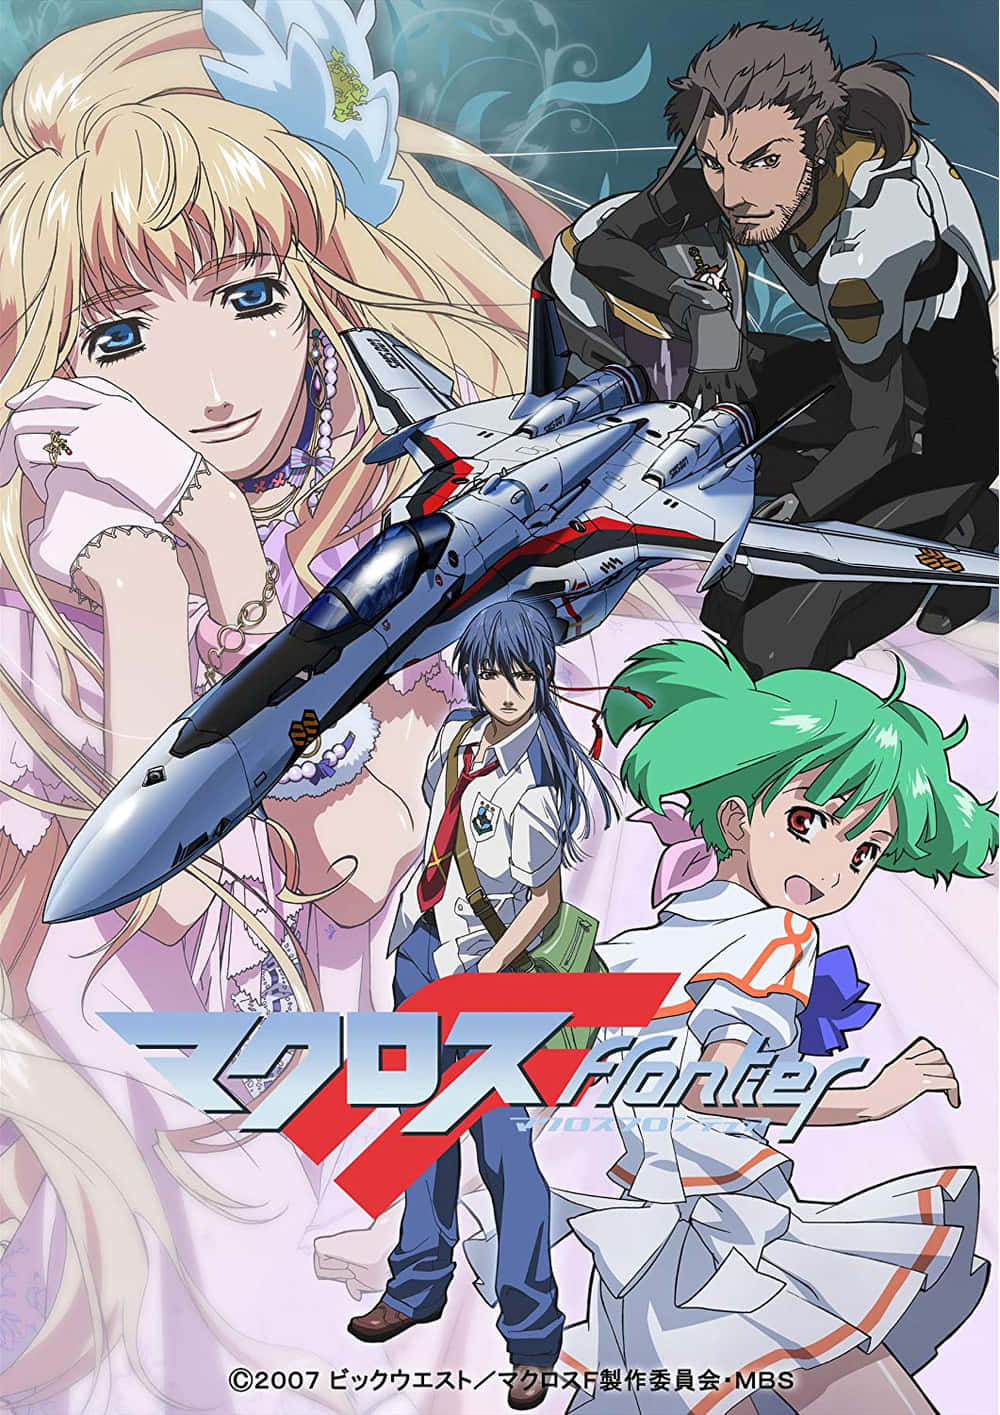 En plakat til anime-serien, hvor to figurer er involveret i en kamp